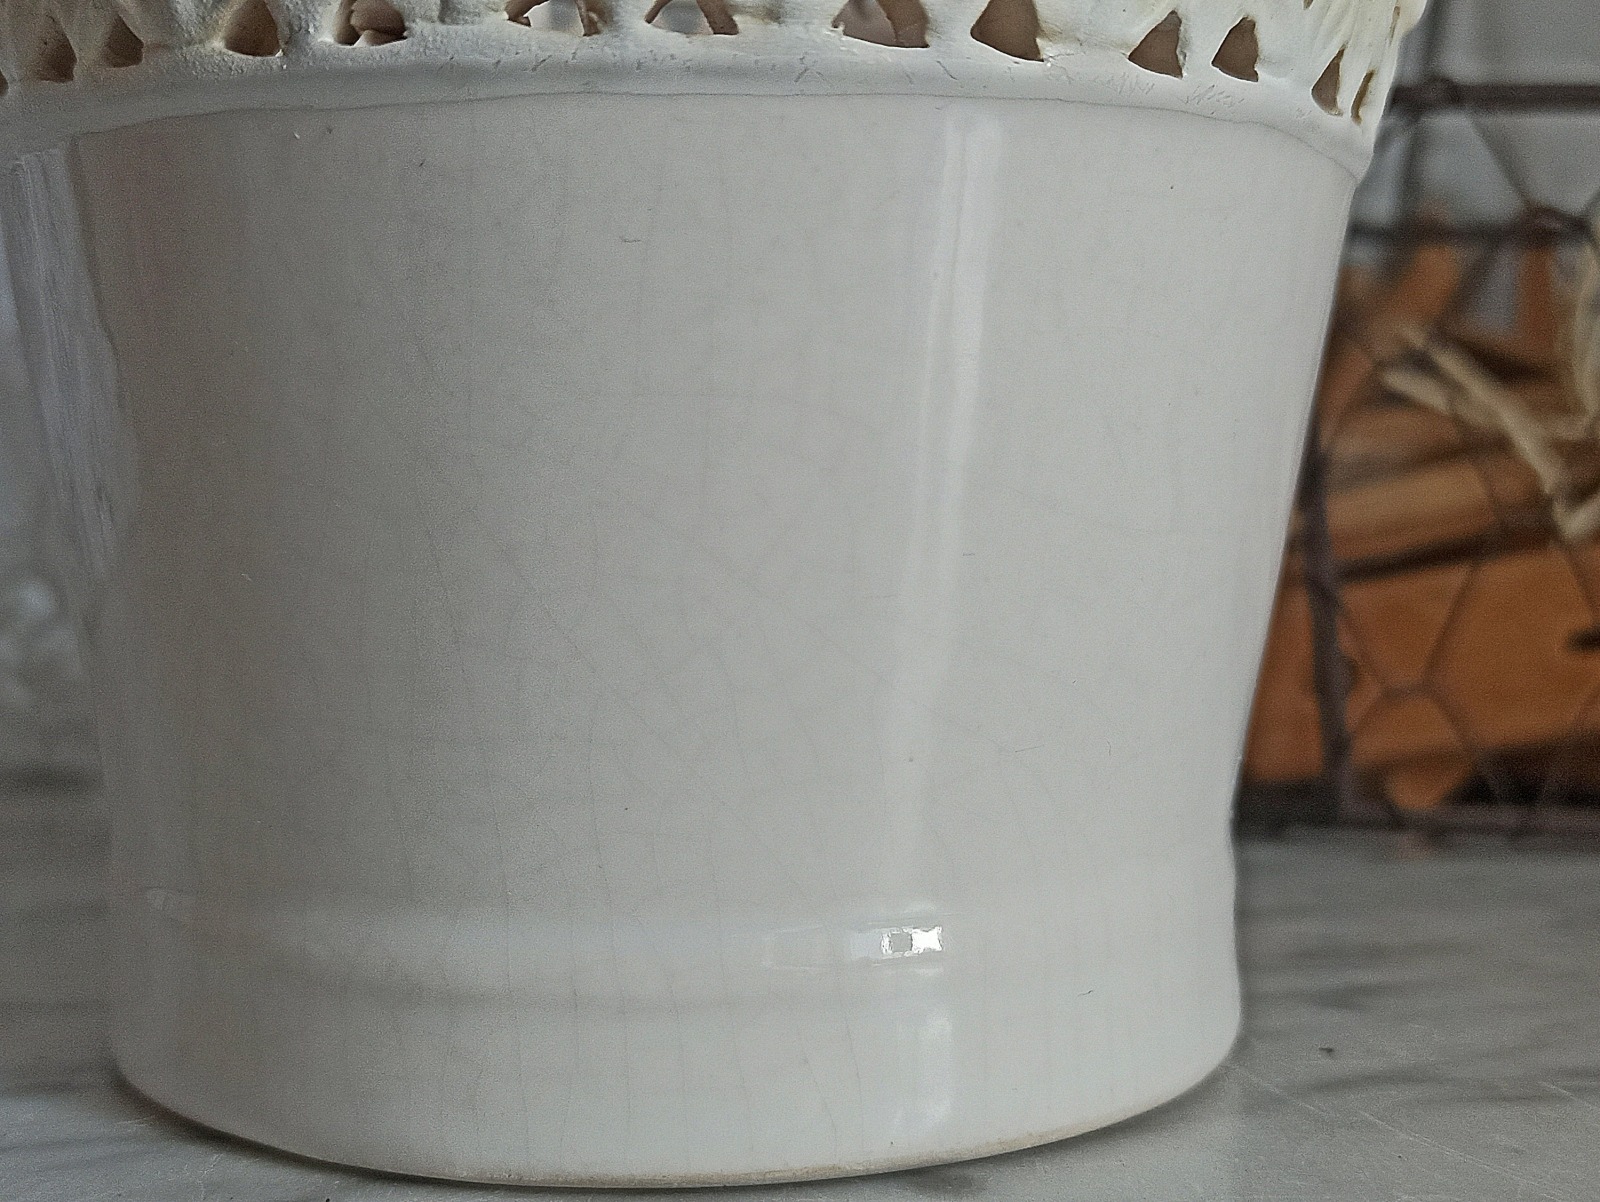 kleiner Blumentopf aus Keramik mit Edelweiß Dekor / Übertopf in weiß / Keramik Übertopf 4